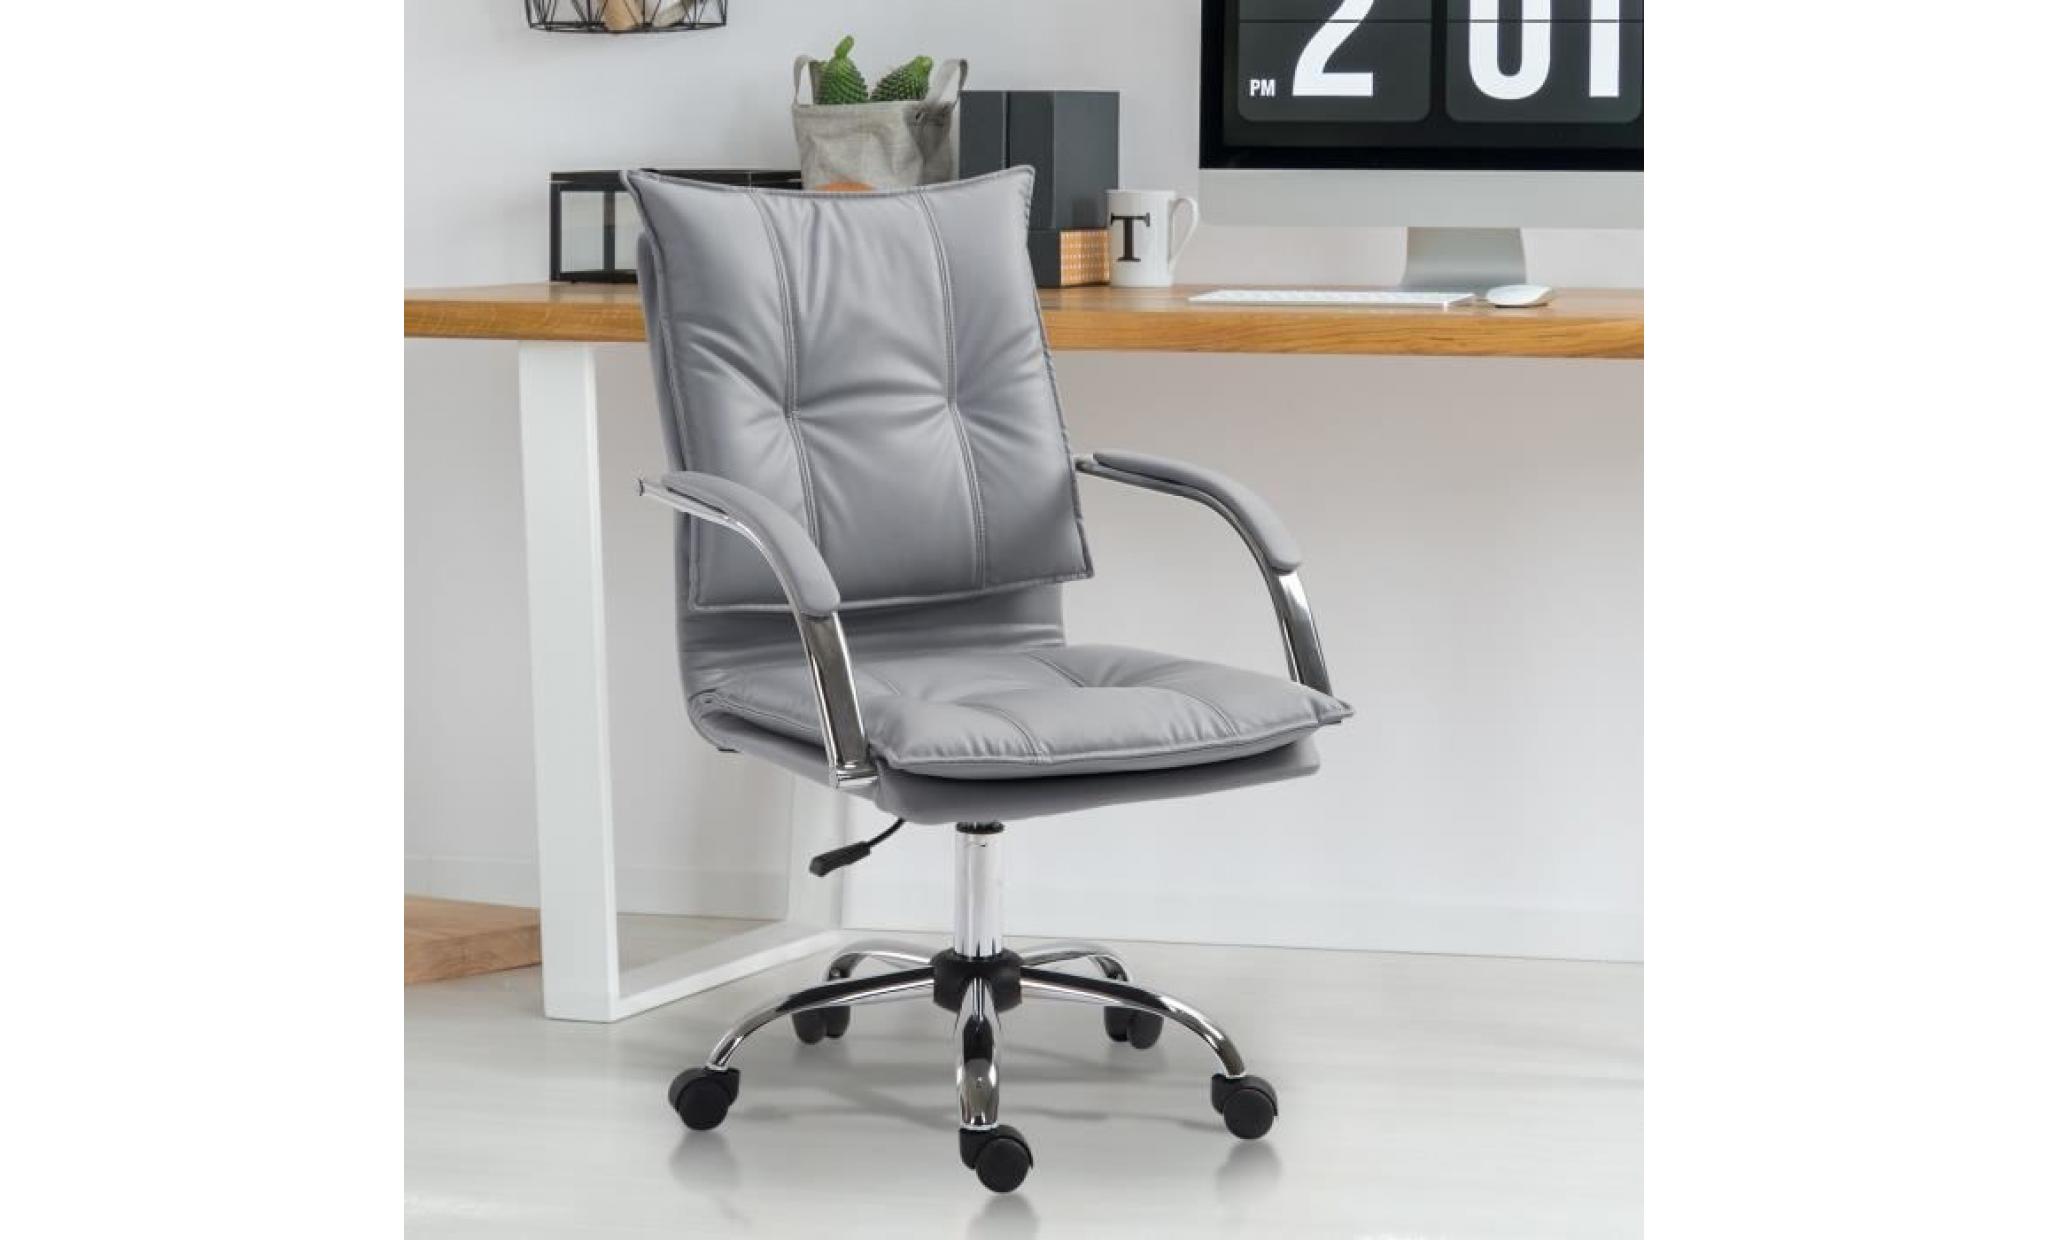 fauteuil chaise de bureau manager grand confort rembourrage haute densité assise dossier accoudoirs simili cuir gris 64x57x58cm gris pas cher